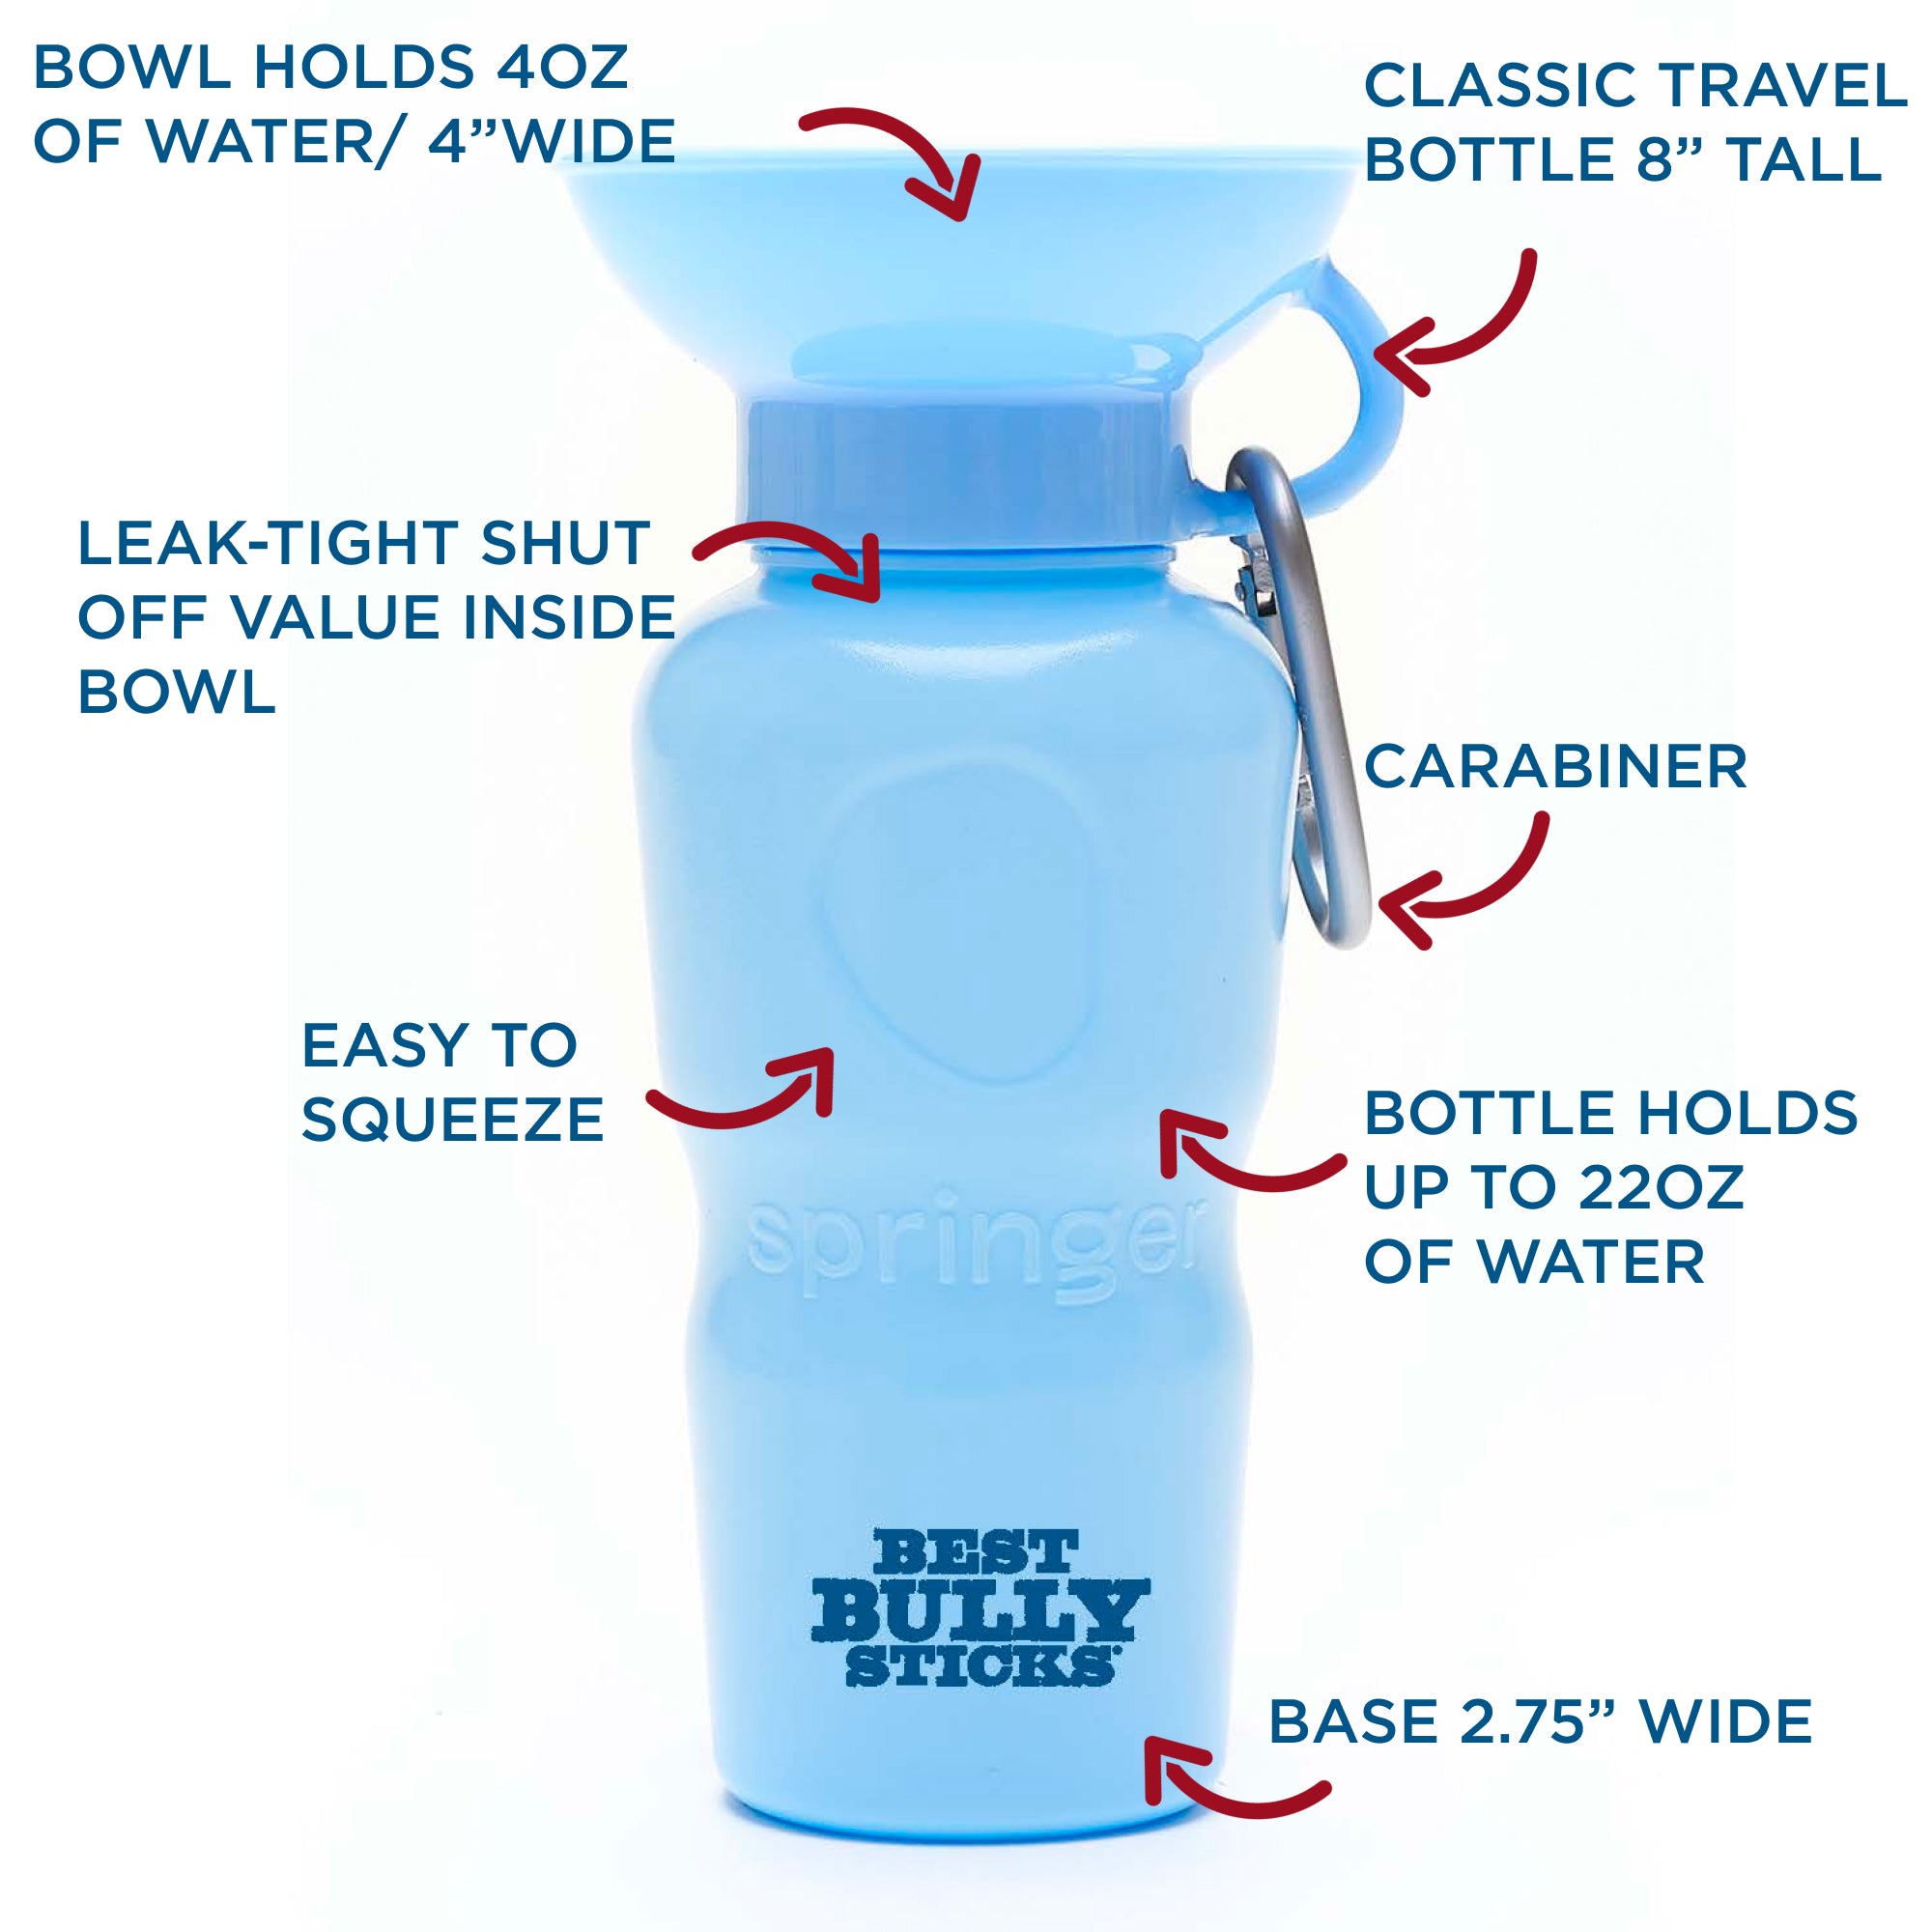 Best Bully Sticks - The Best Doggie Water Bottle - Blue